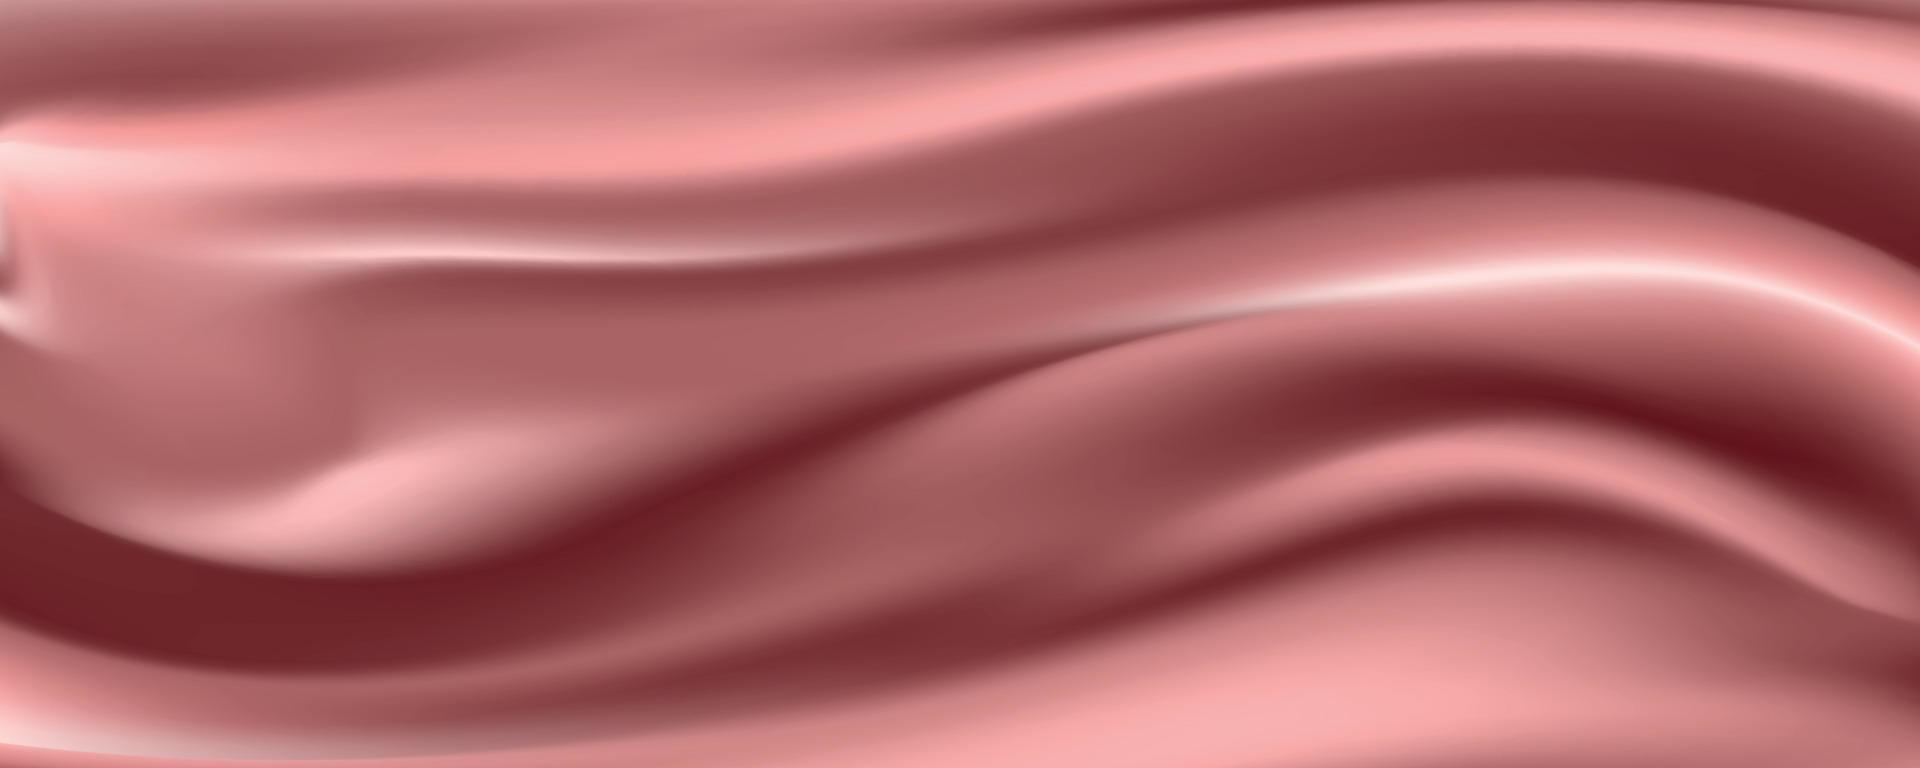 roségoldener Seidenstoff abstrakter Hintergrund, Vektorillustration vektor